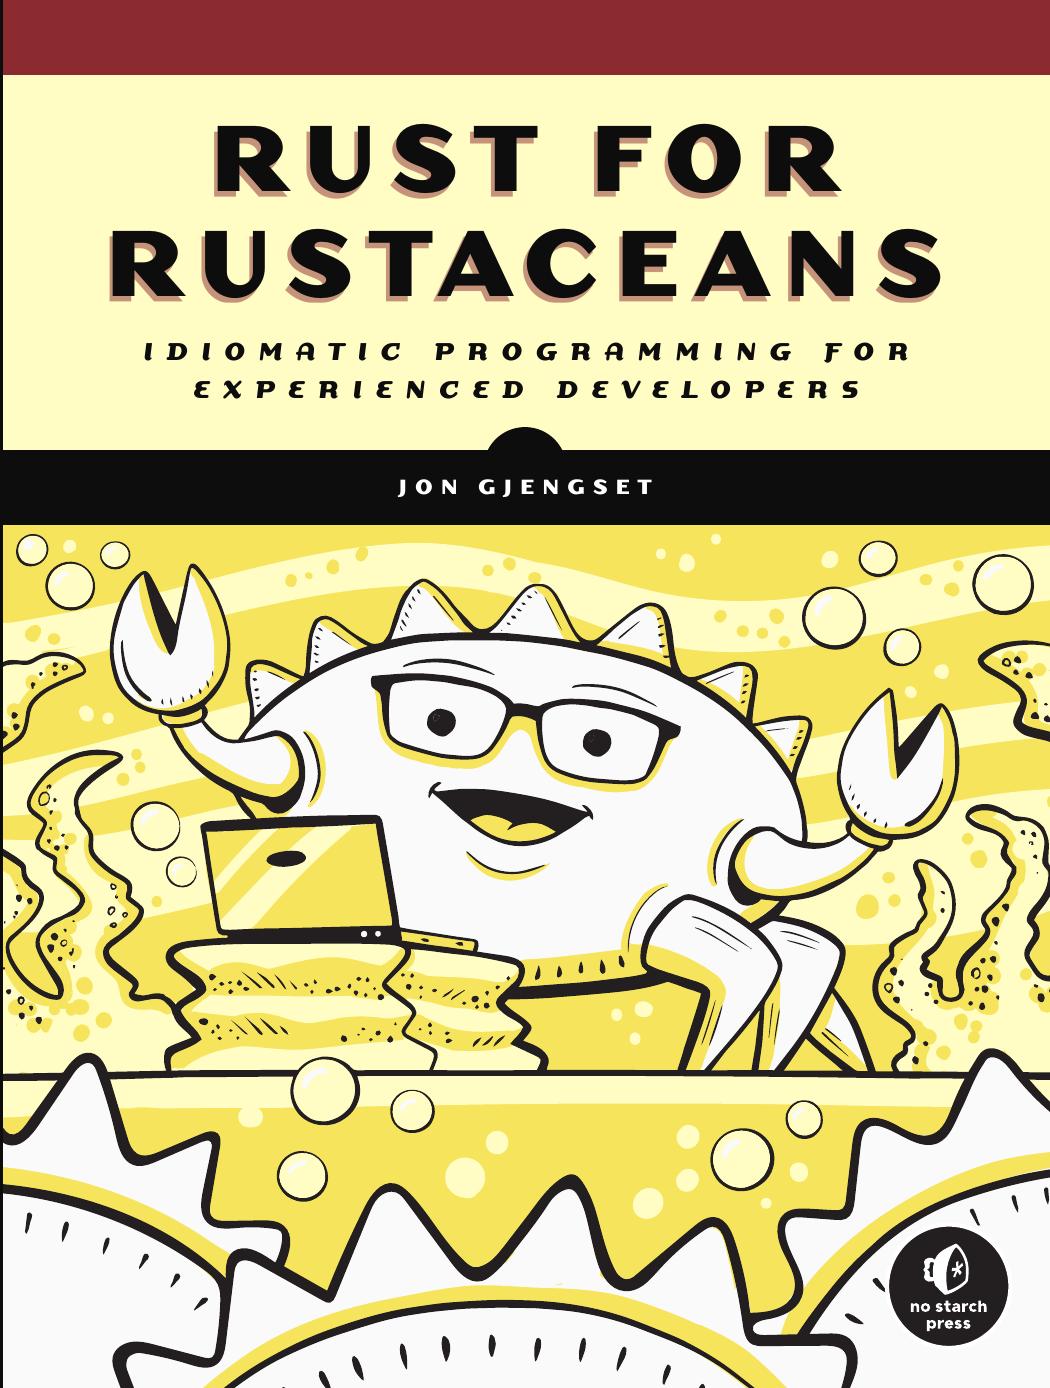 Rust for Rustaceans by Jon Gjengset